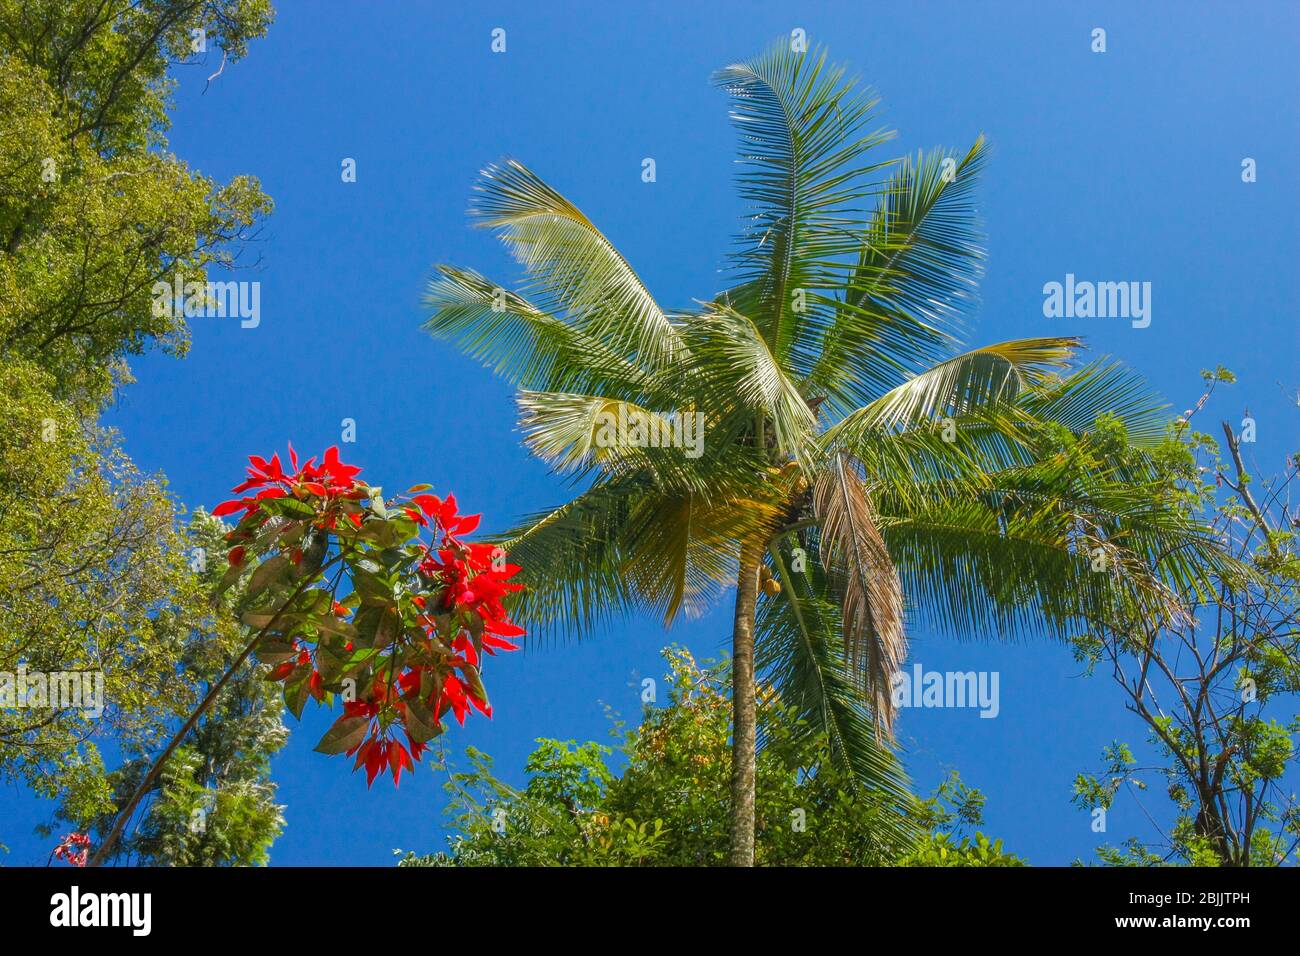 Un albero di cocco e una pianta fiorita sullo sfondo del cielo blu - fotografato in una giornata di sole Foto Stock